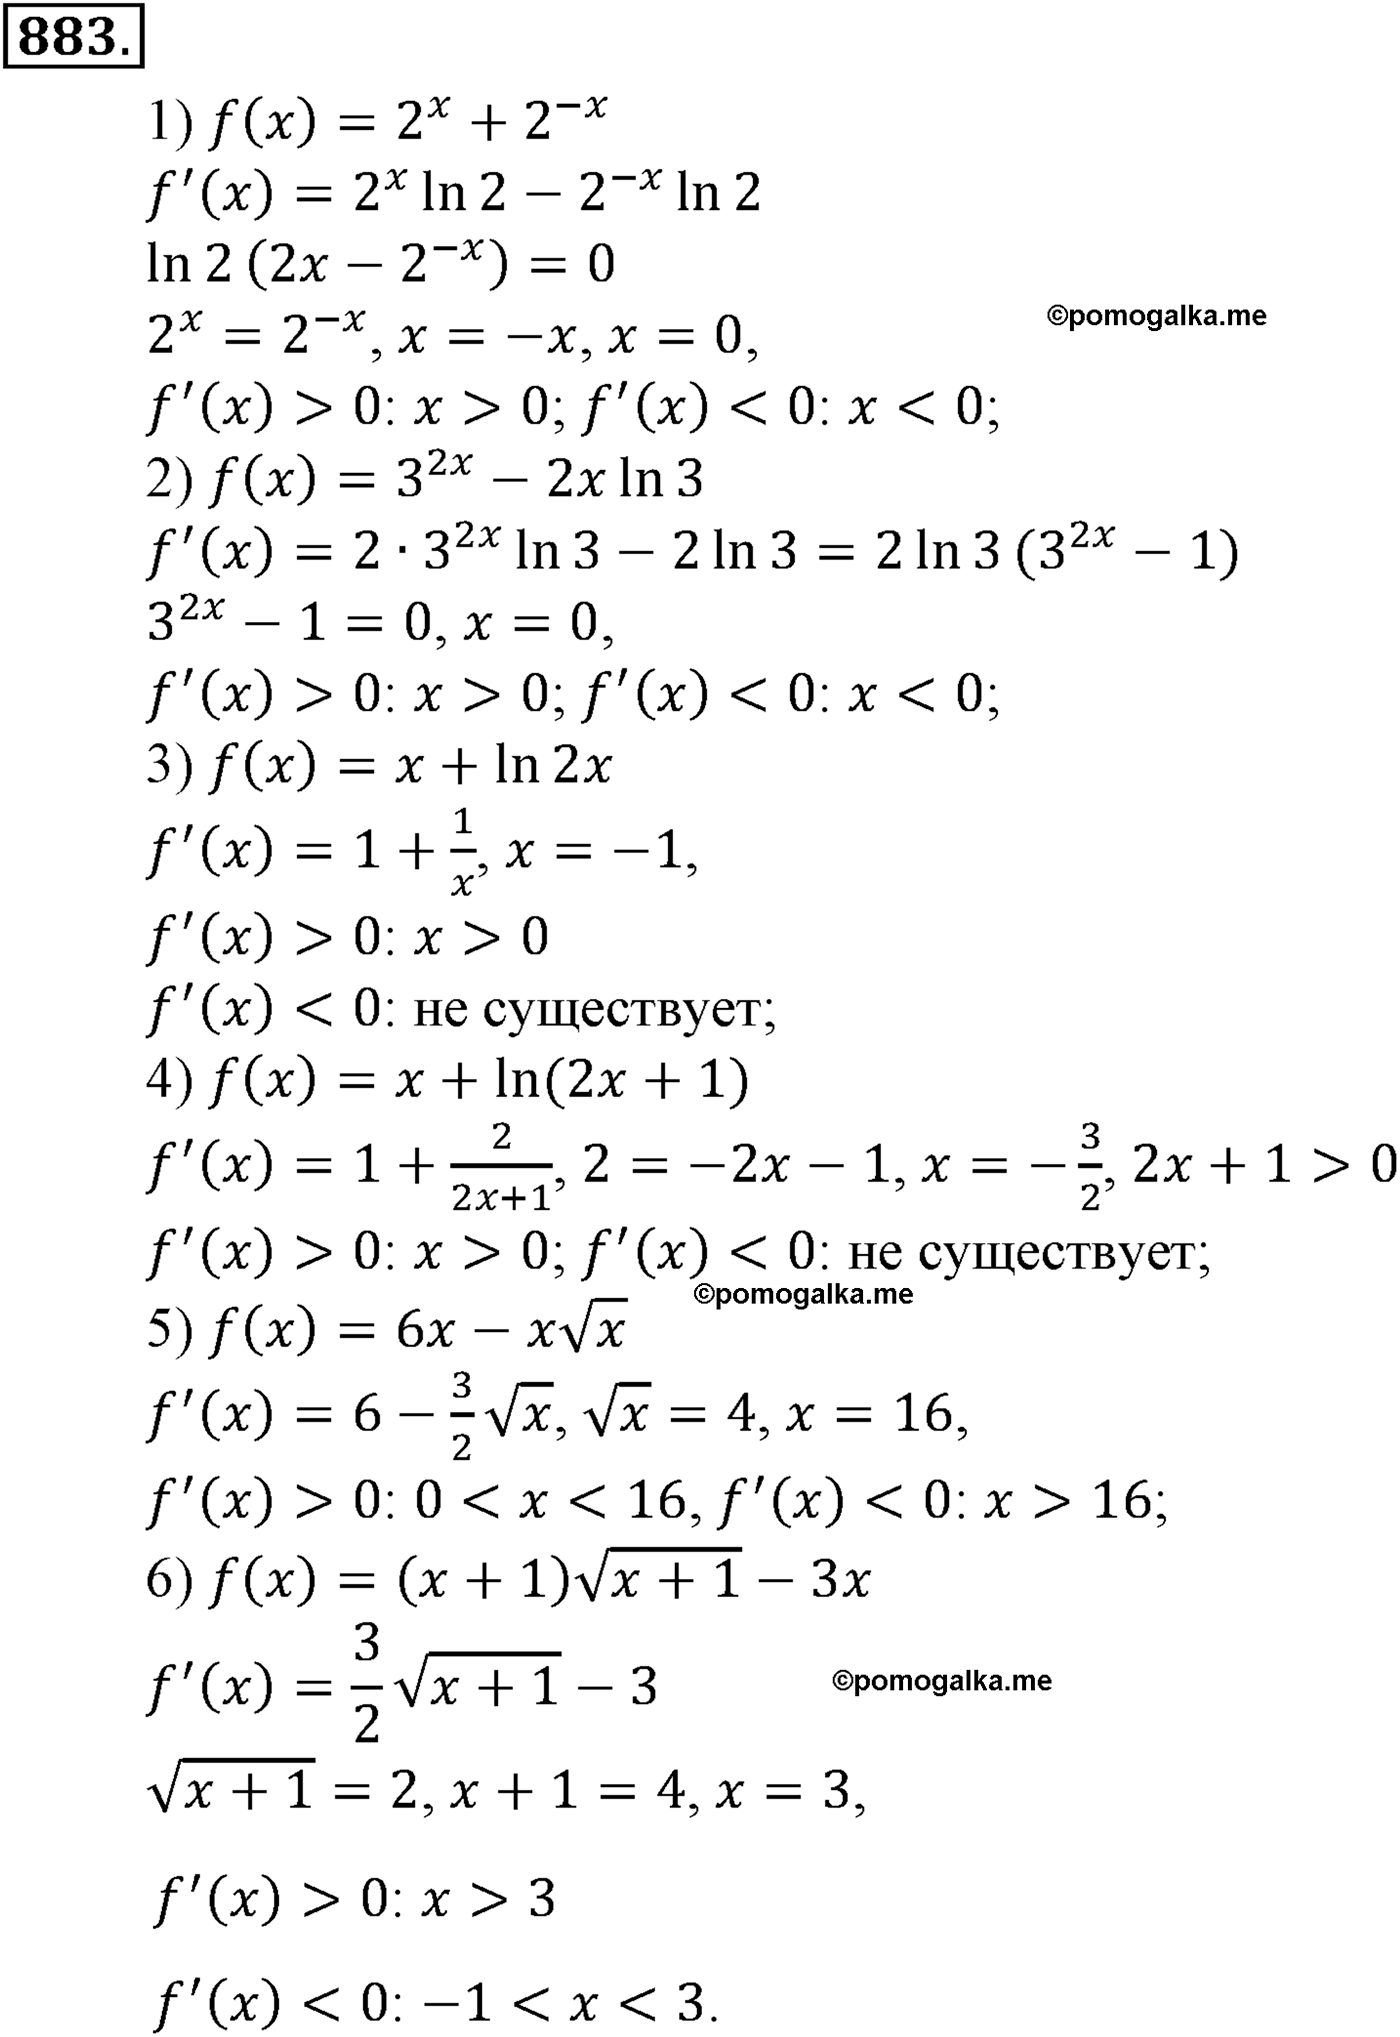 разбор задачи №883 по алгебре за 10-11 класс из учебника Алимова, Колягина